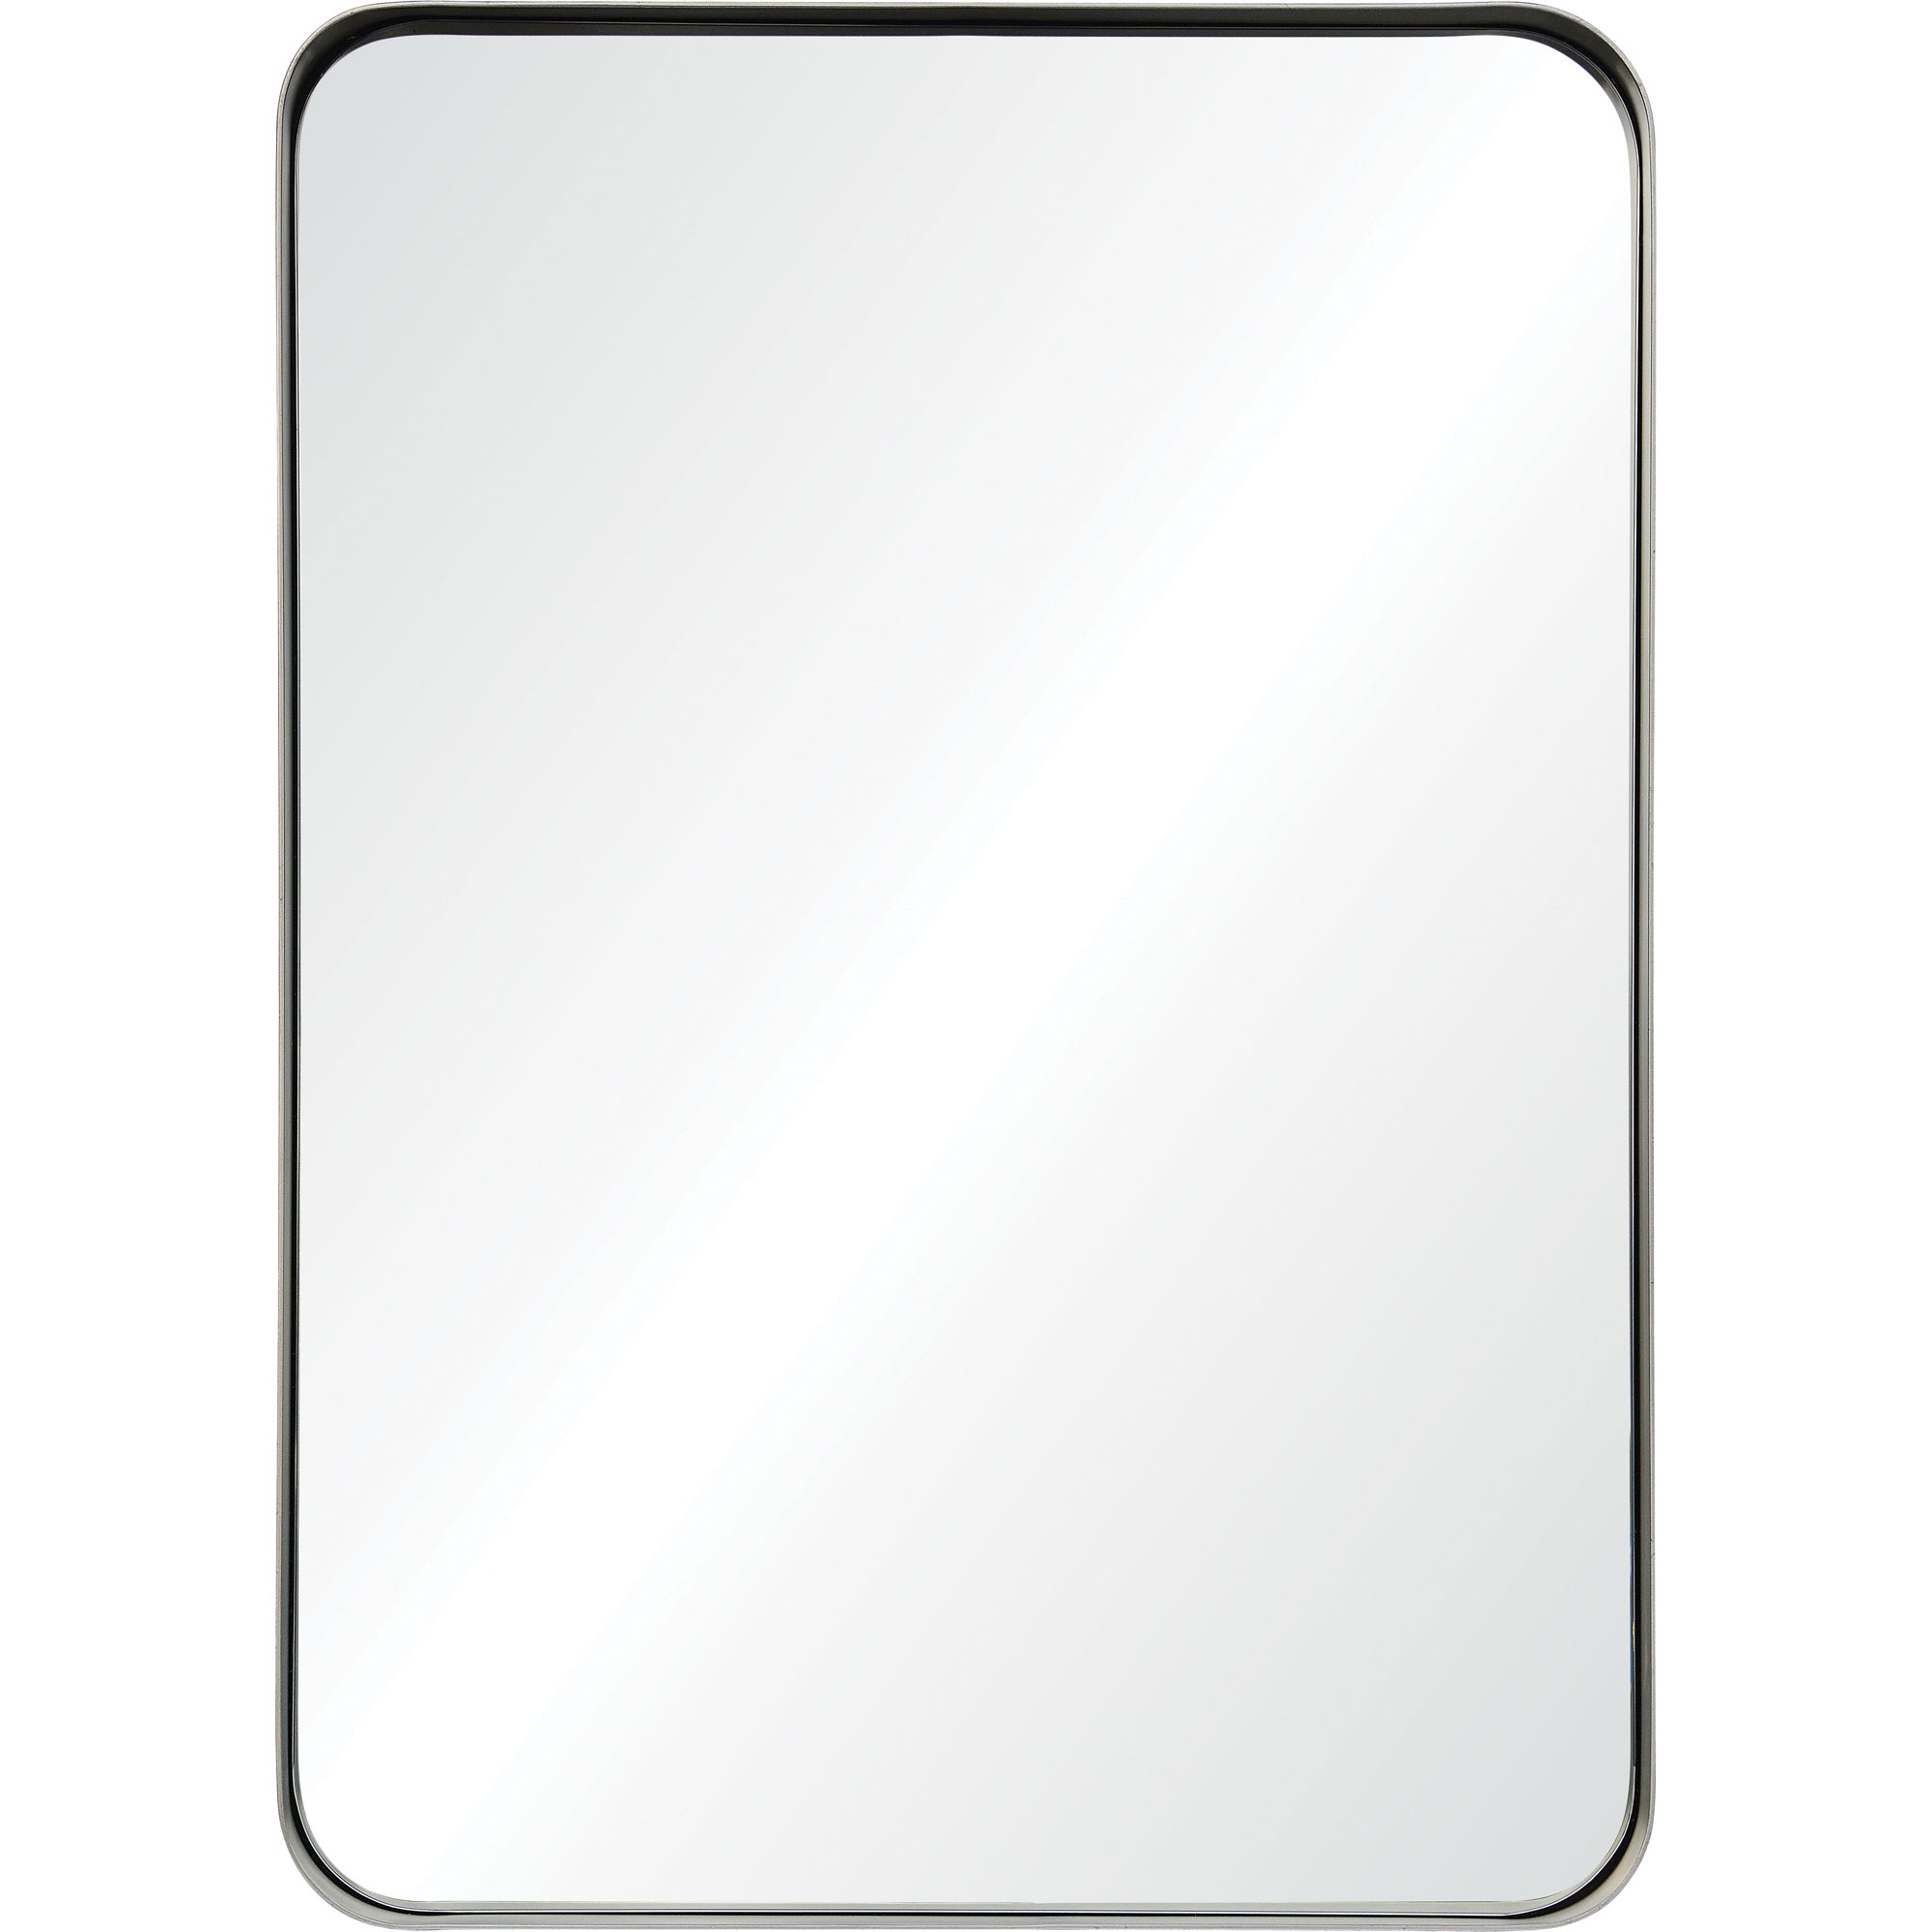 Vered 30" Iron - Silver Leaf Mirror